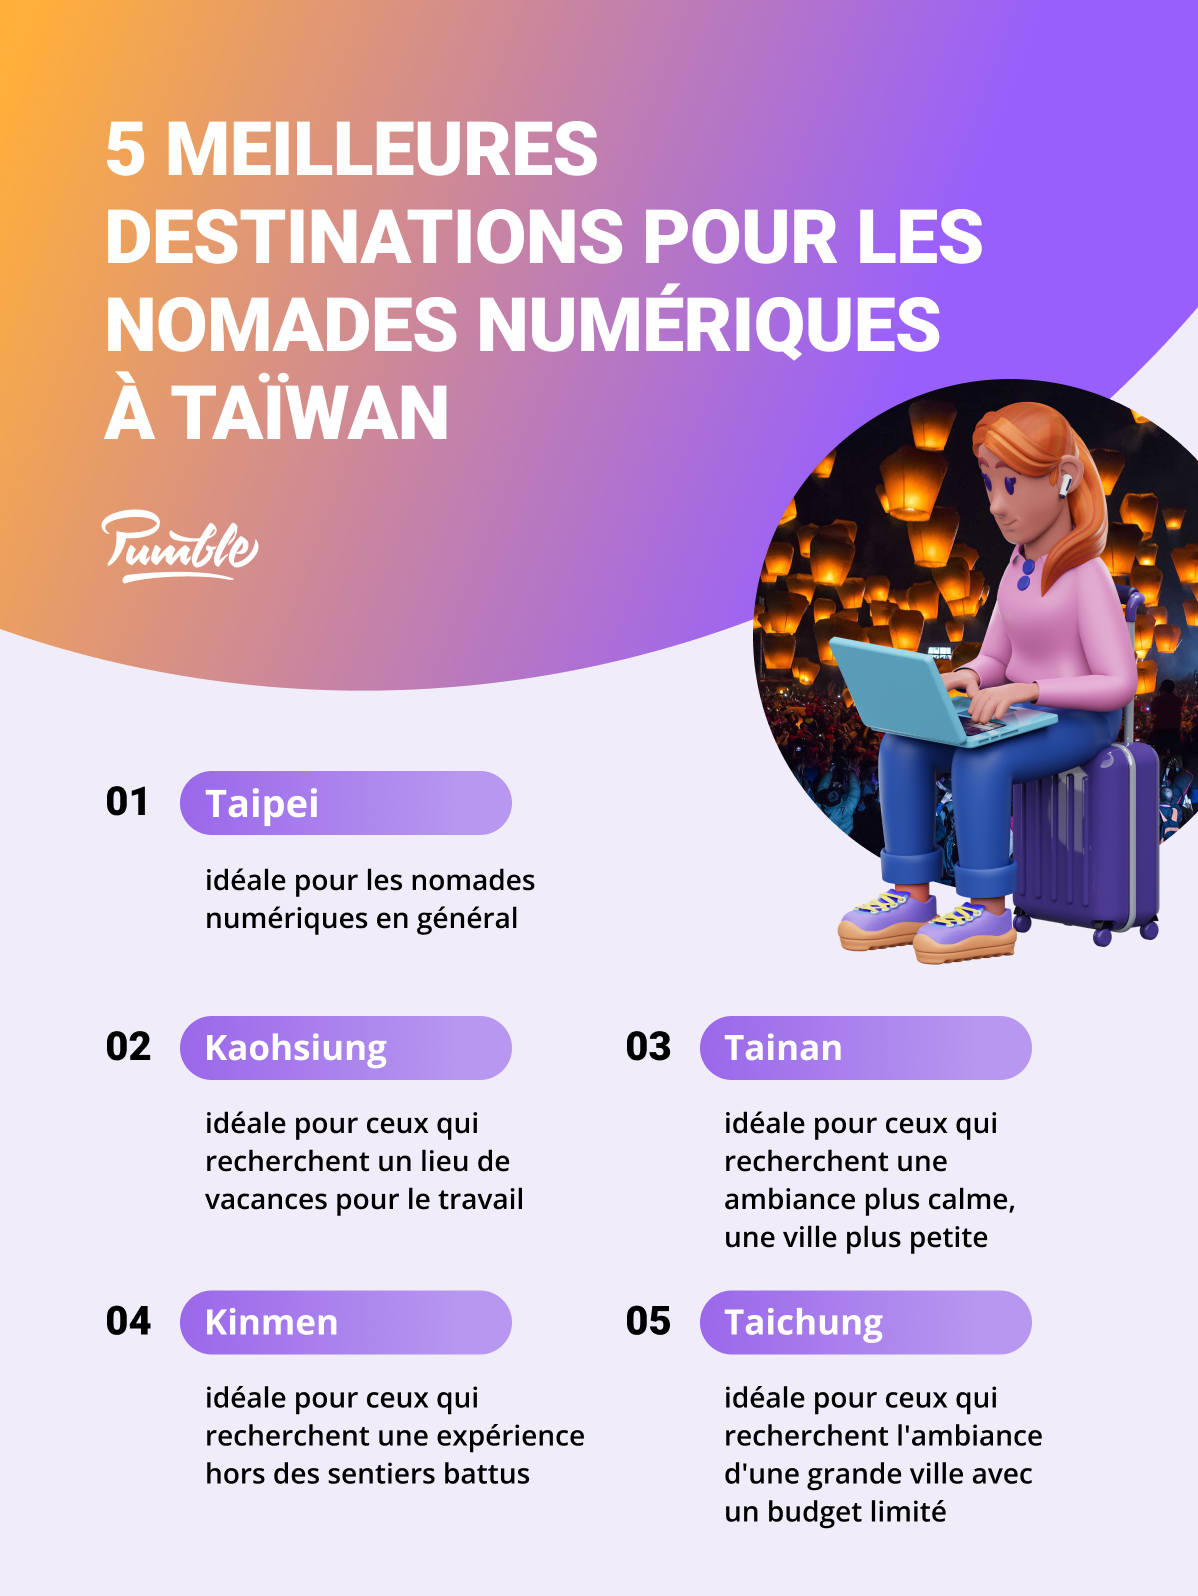 Les 5 meilleures destinations pour les nomades numériques à Taïwan